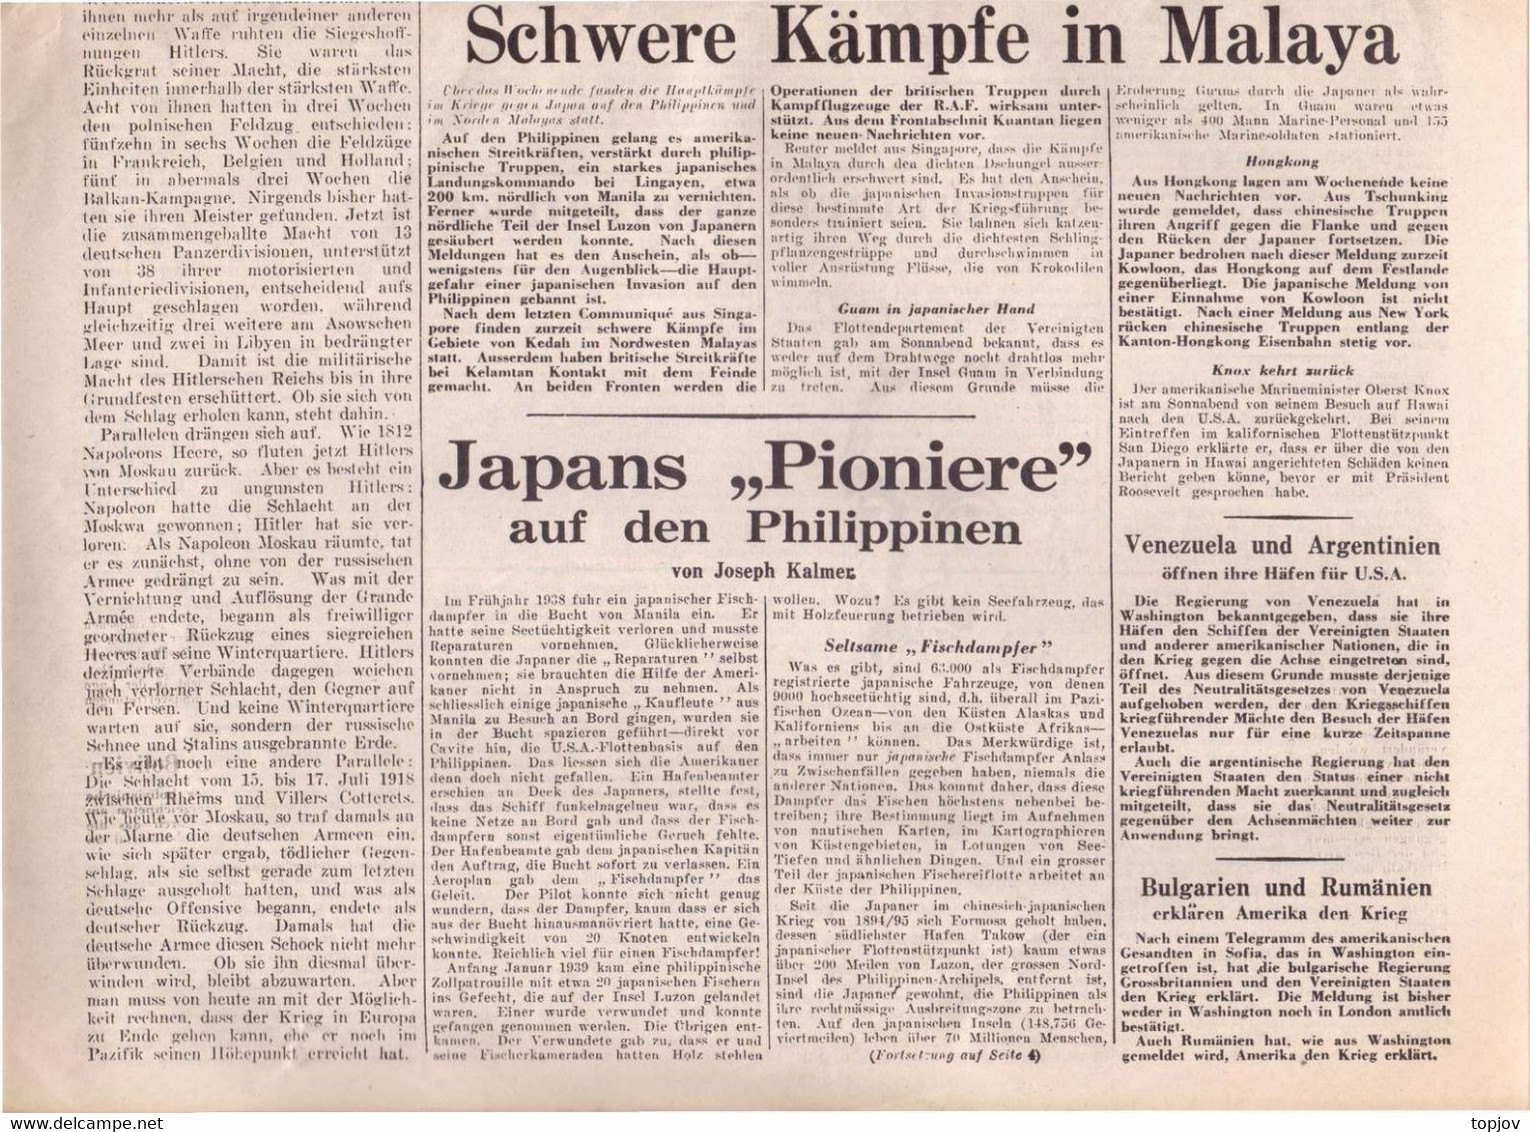 ENGLAND -  DIE  ZEITUNG  - KRIEG  MOSKAU - LONDON  - Komplette Zeitung - 1941 - General Issues